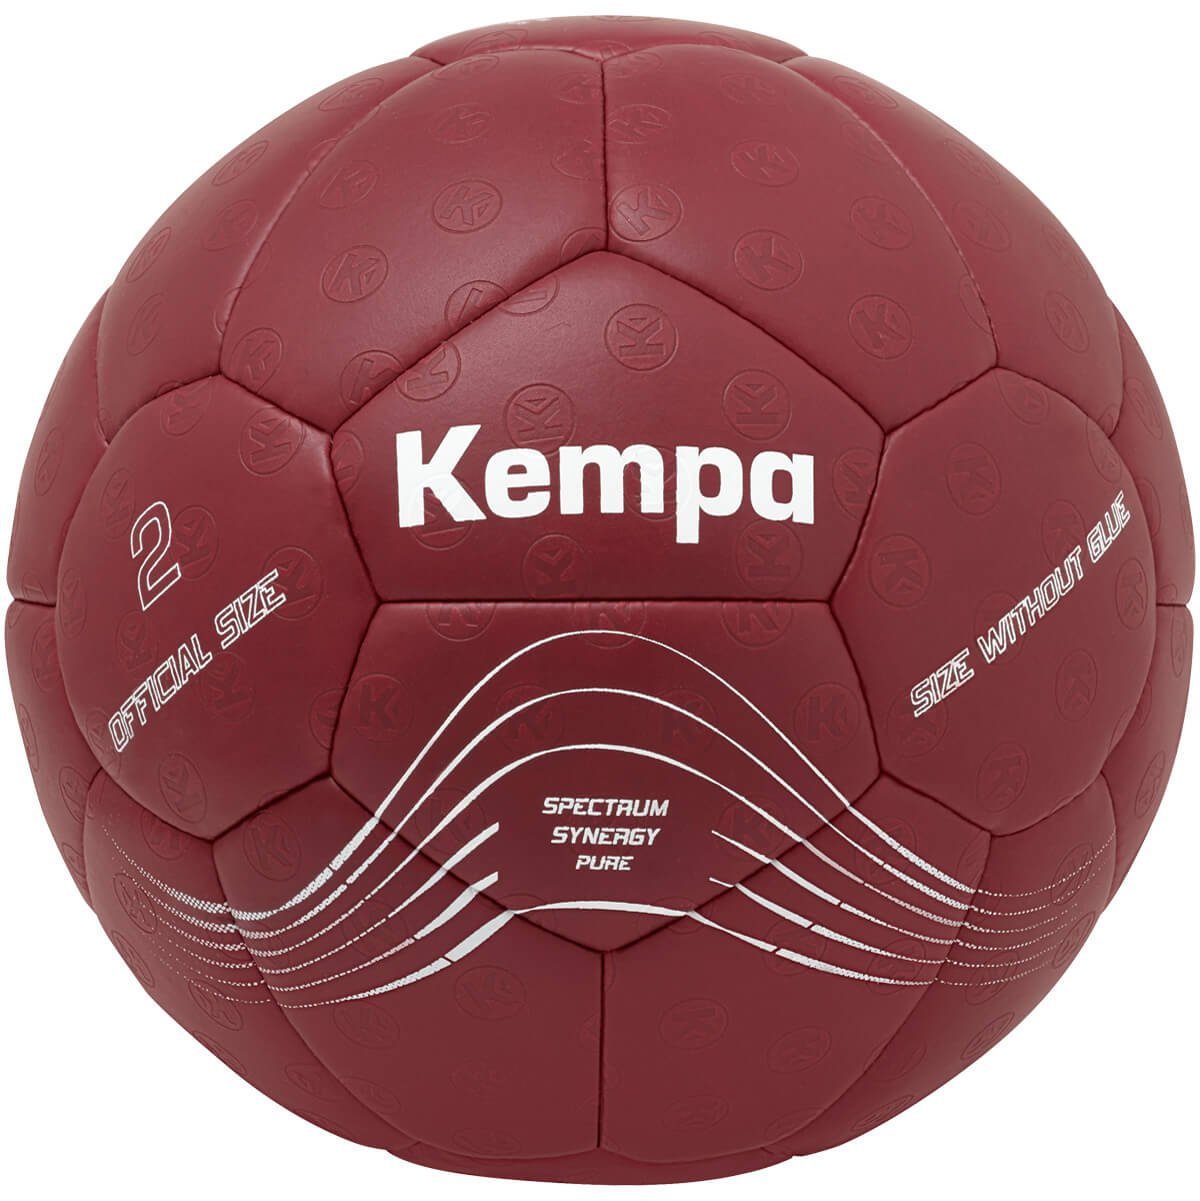 Kempa Handball | Handbälle